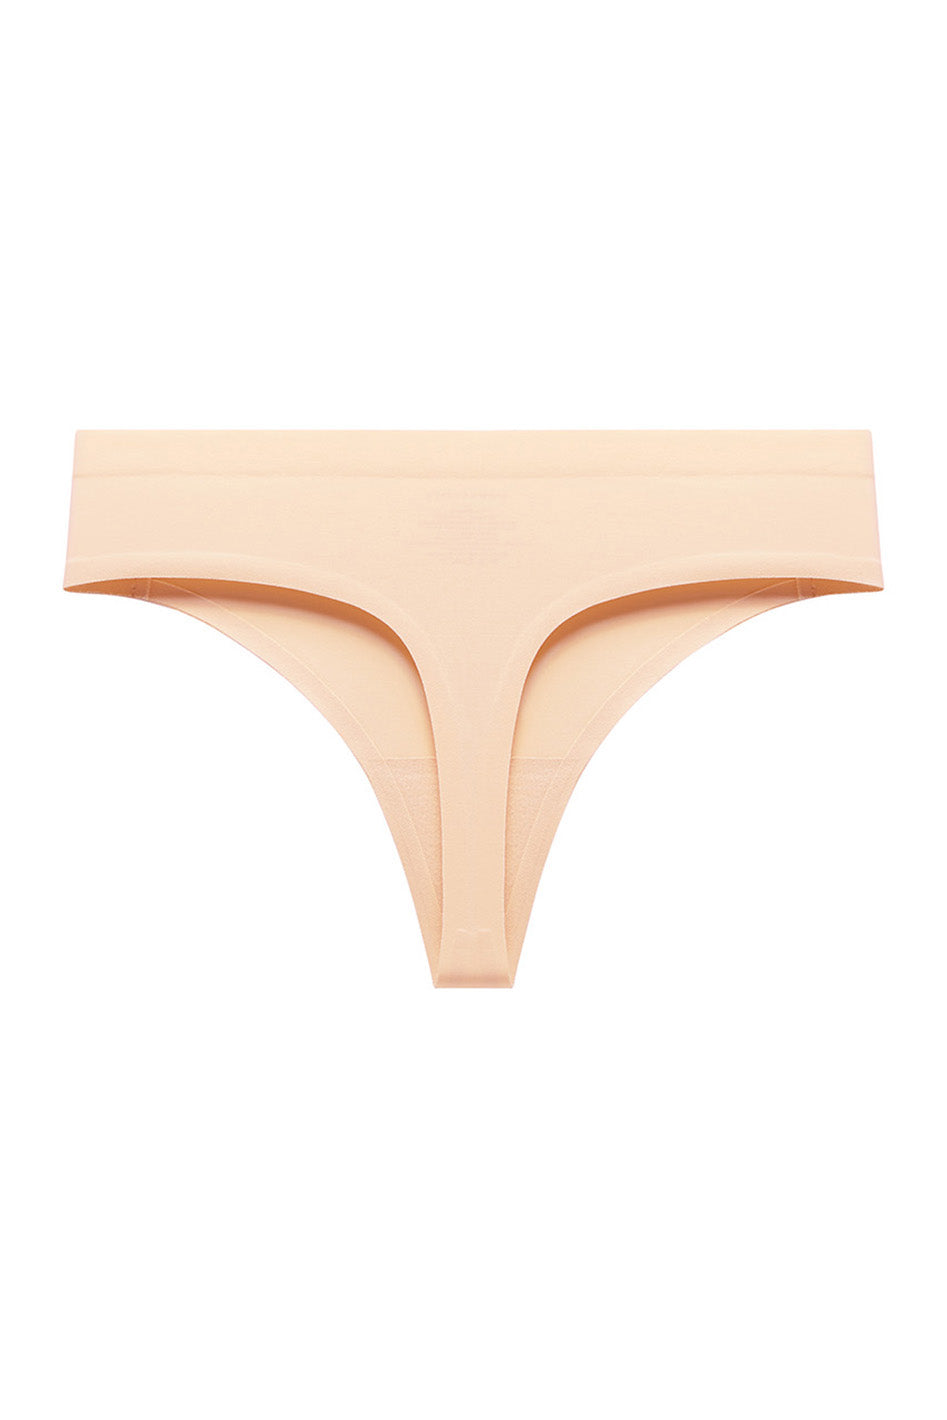 Set of 7 seamless high waist panties S - 3XL $199 #fyp #seamlesspanti